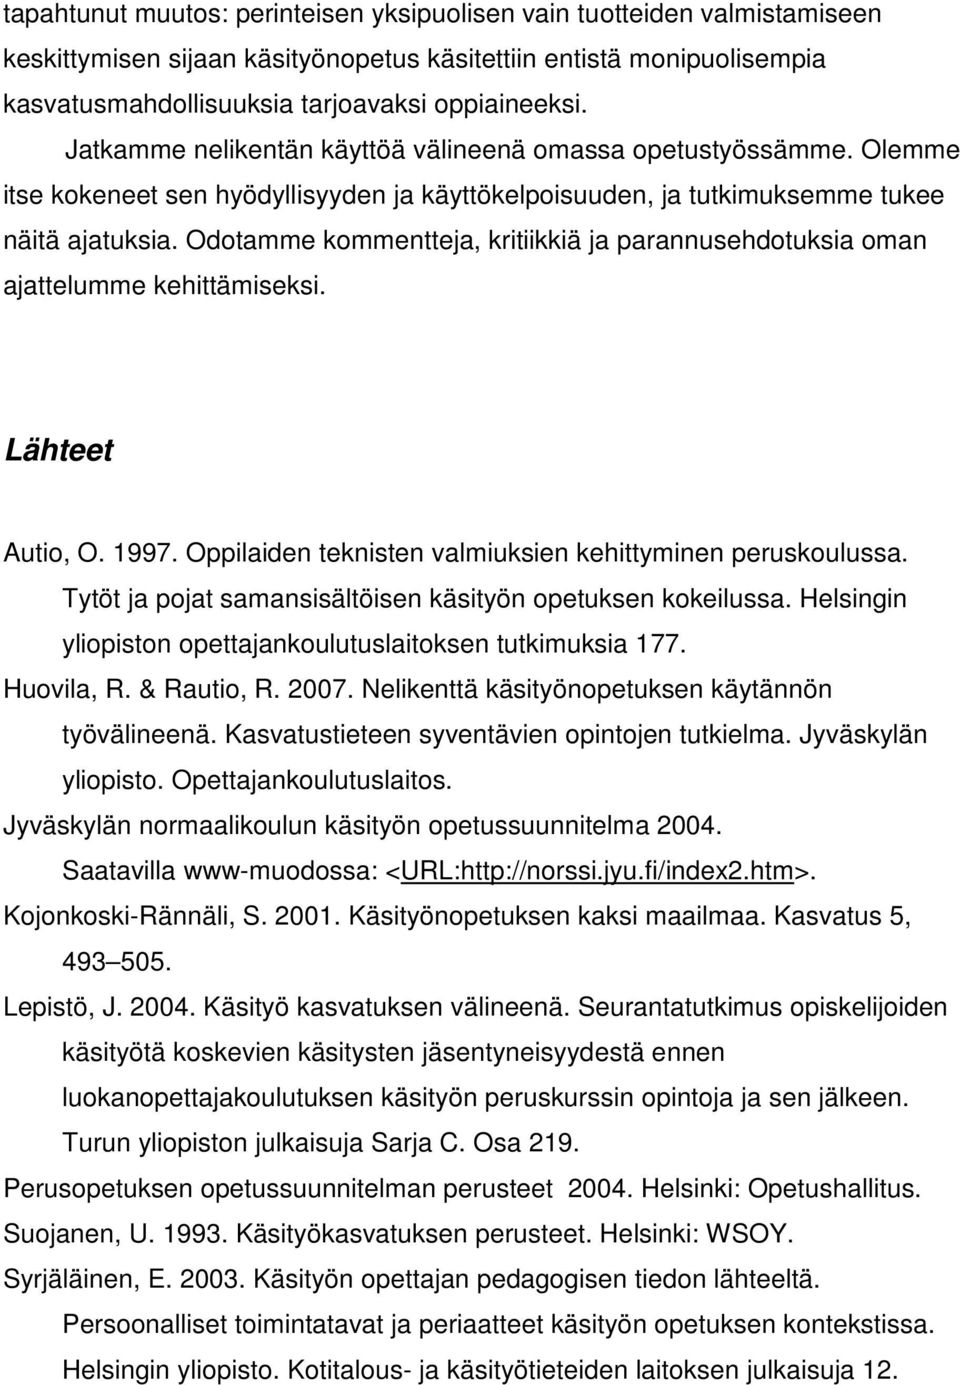 KÄSITYÖ ON VÄLINE OPPIA JOTAIN AIVAN MUUTA - PDF Ilmainen lataus